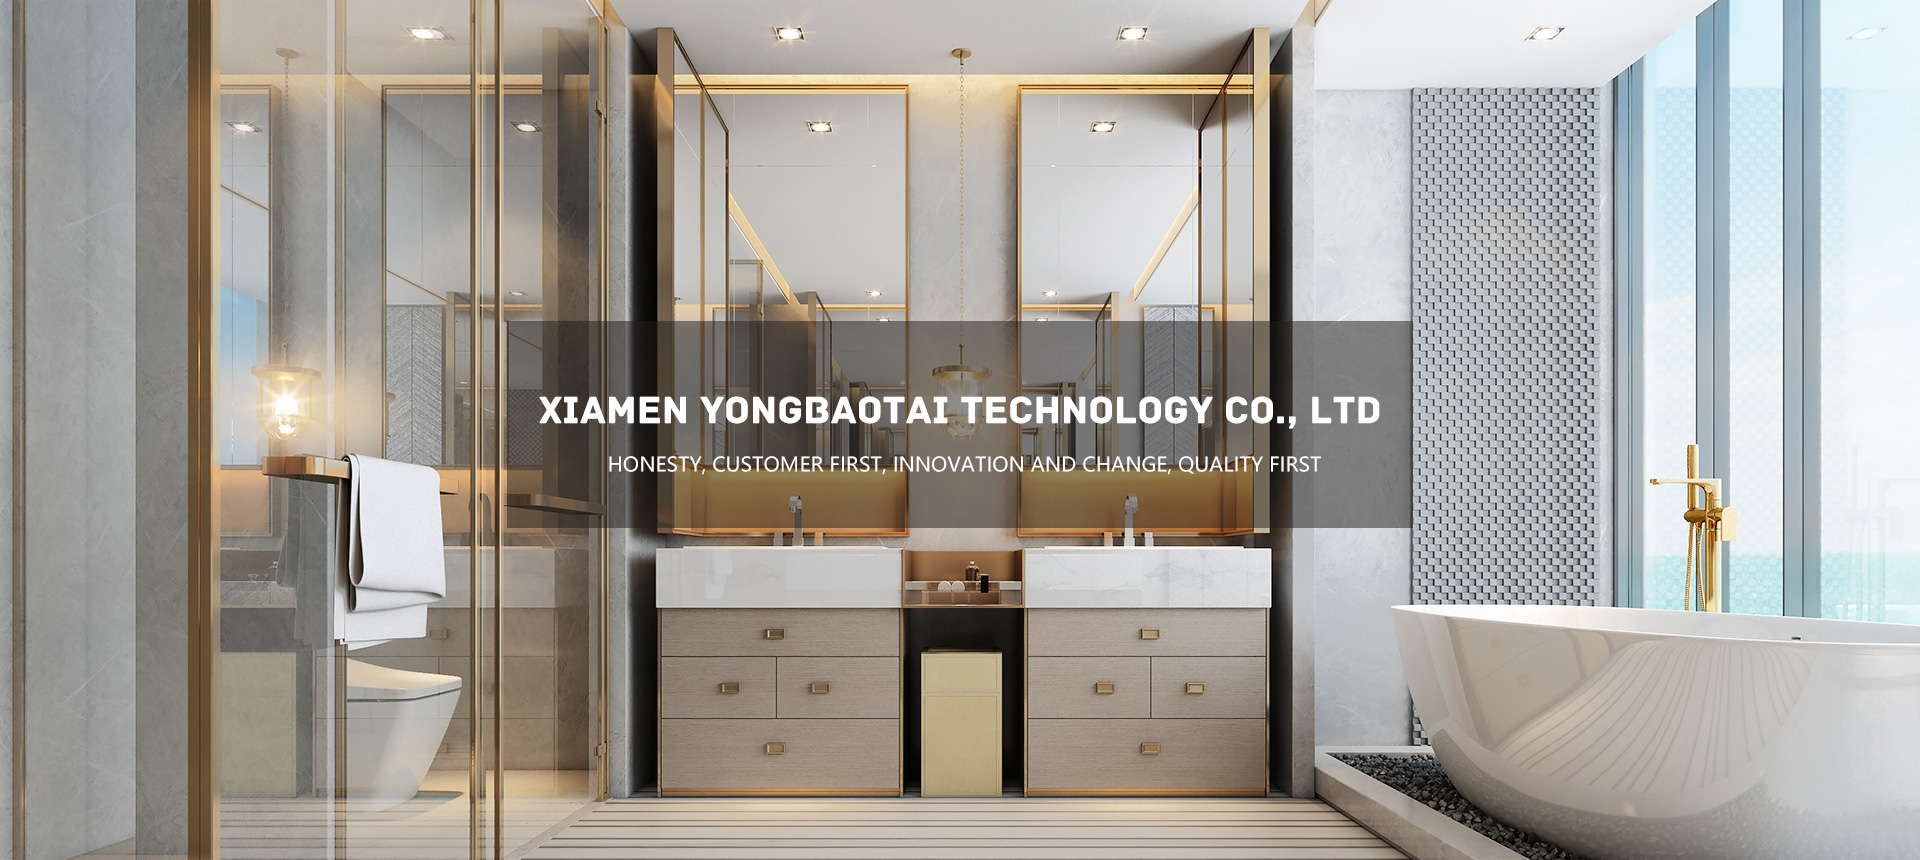 Xiamen Yongbaotai Technology Co., Ltd.